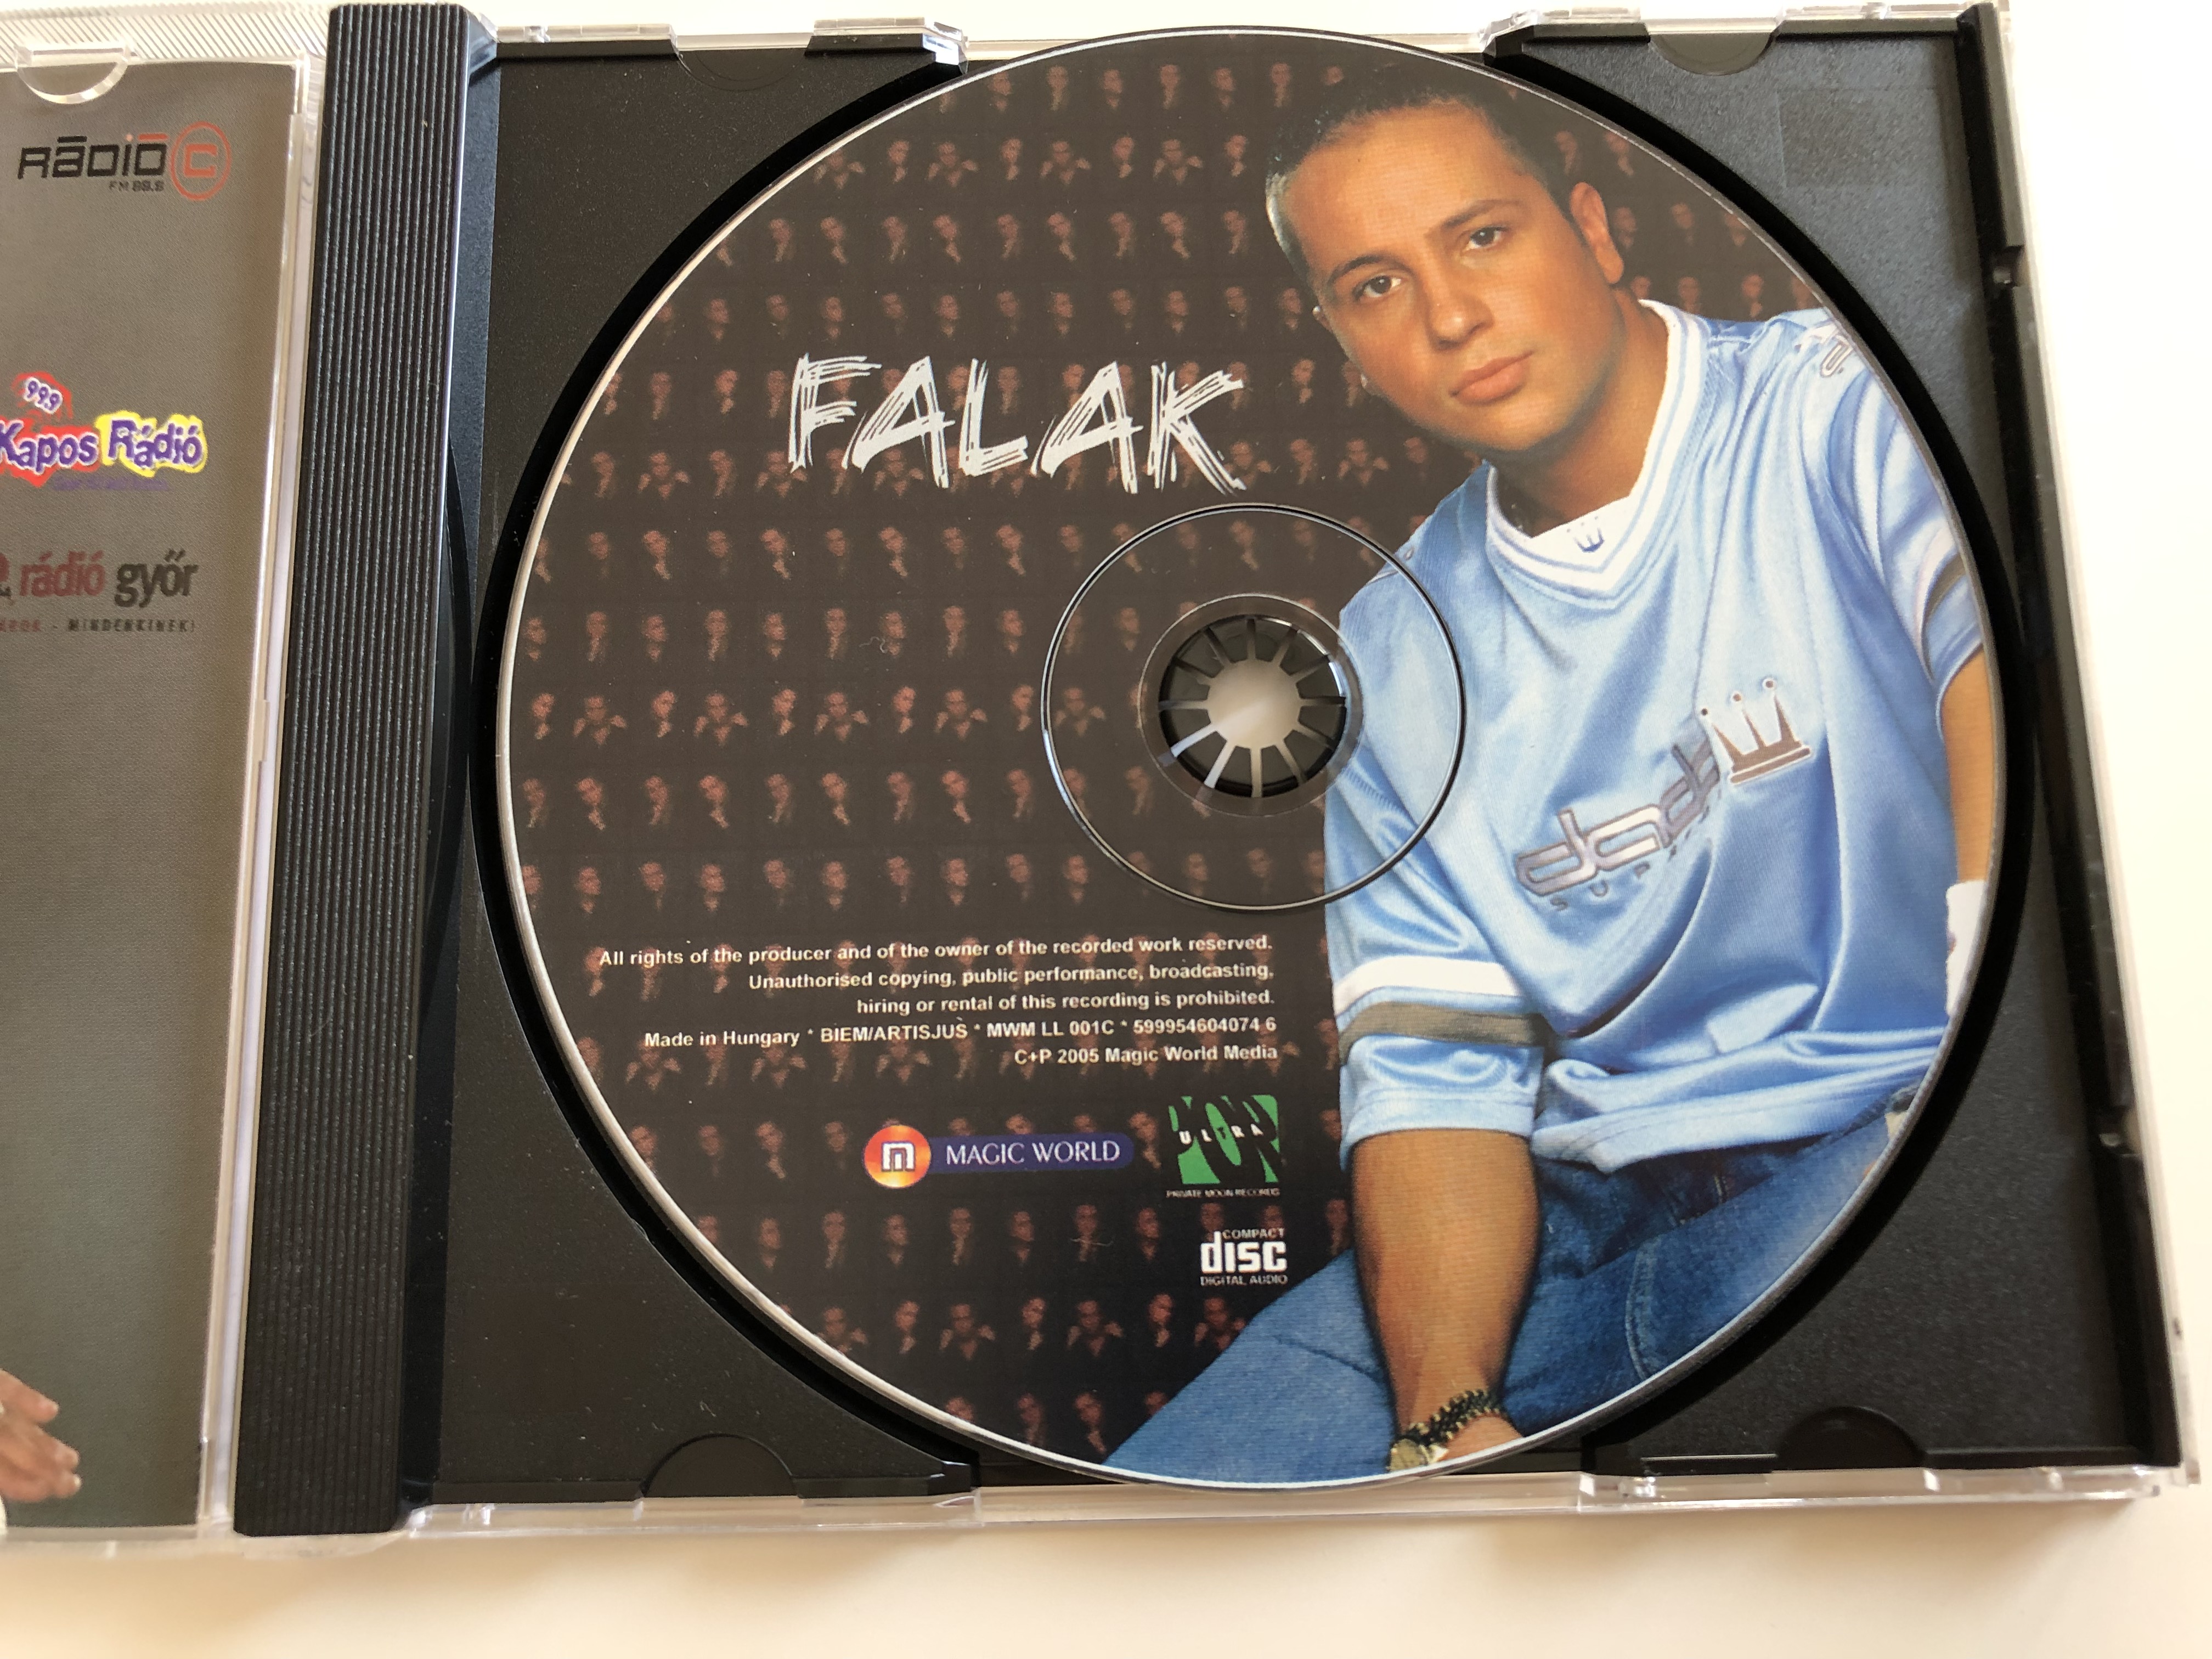 l.l.-junior-falak-magic-world-media-kft.-audio-cd-2005-mwm-ll-001-c-5-.jpg